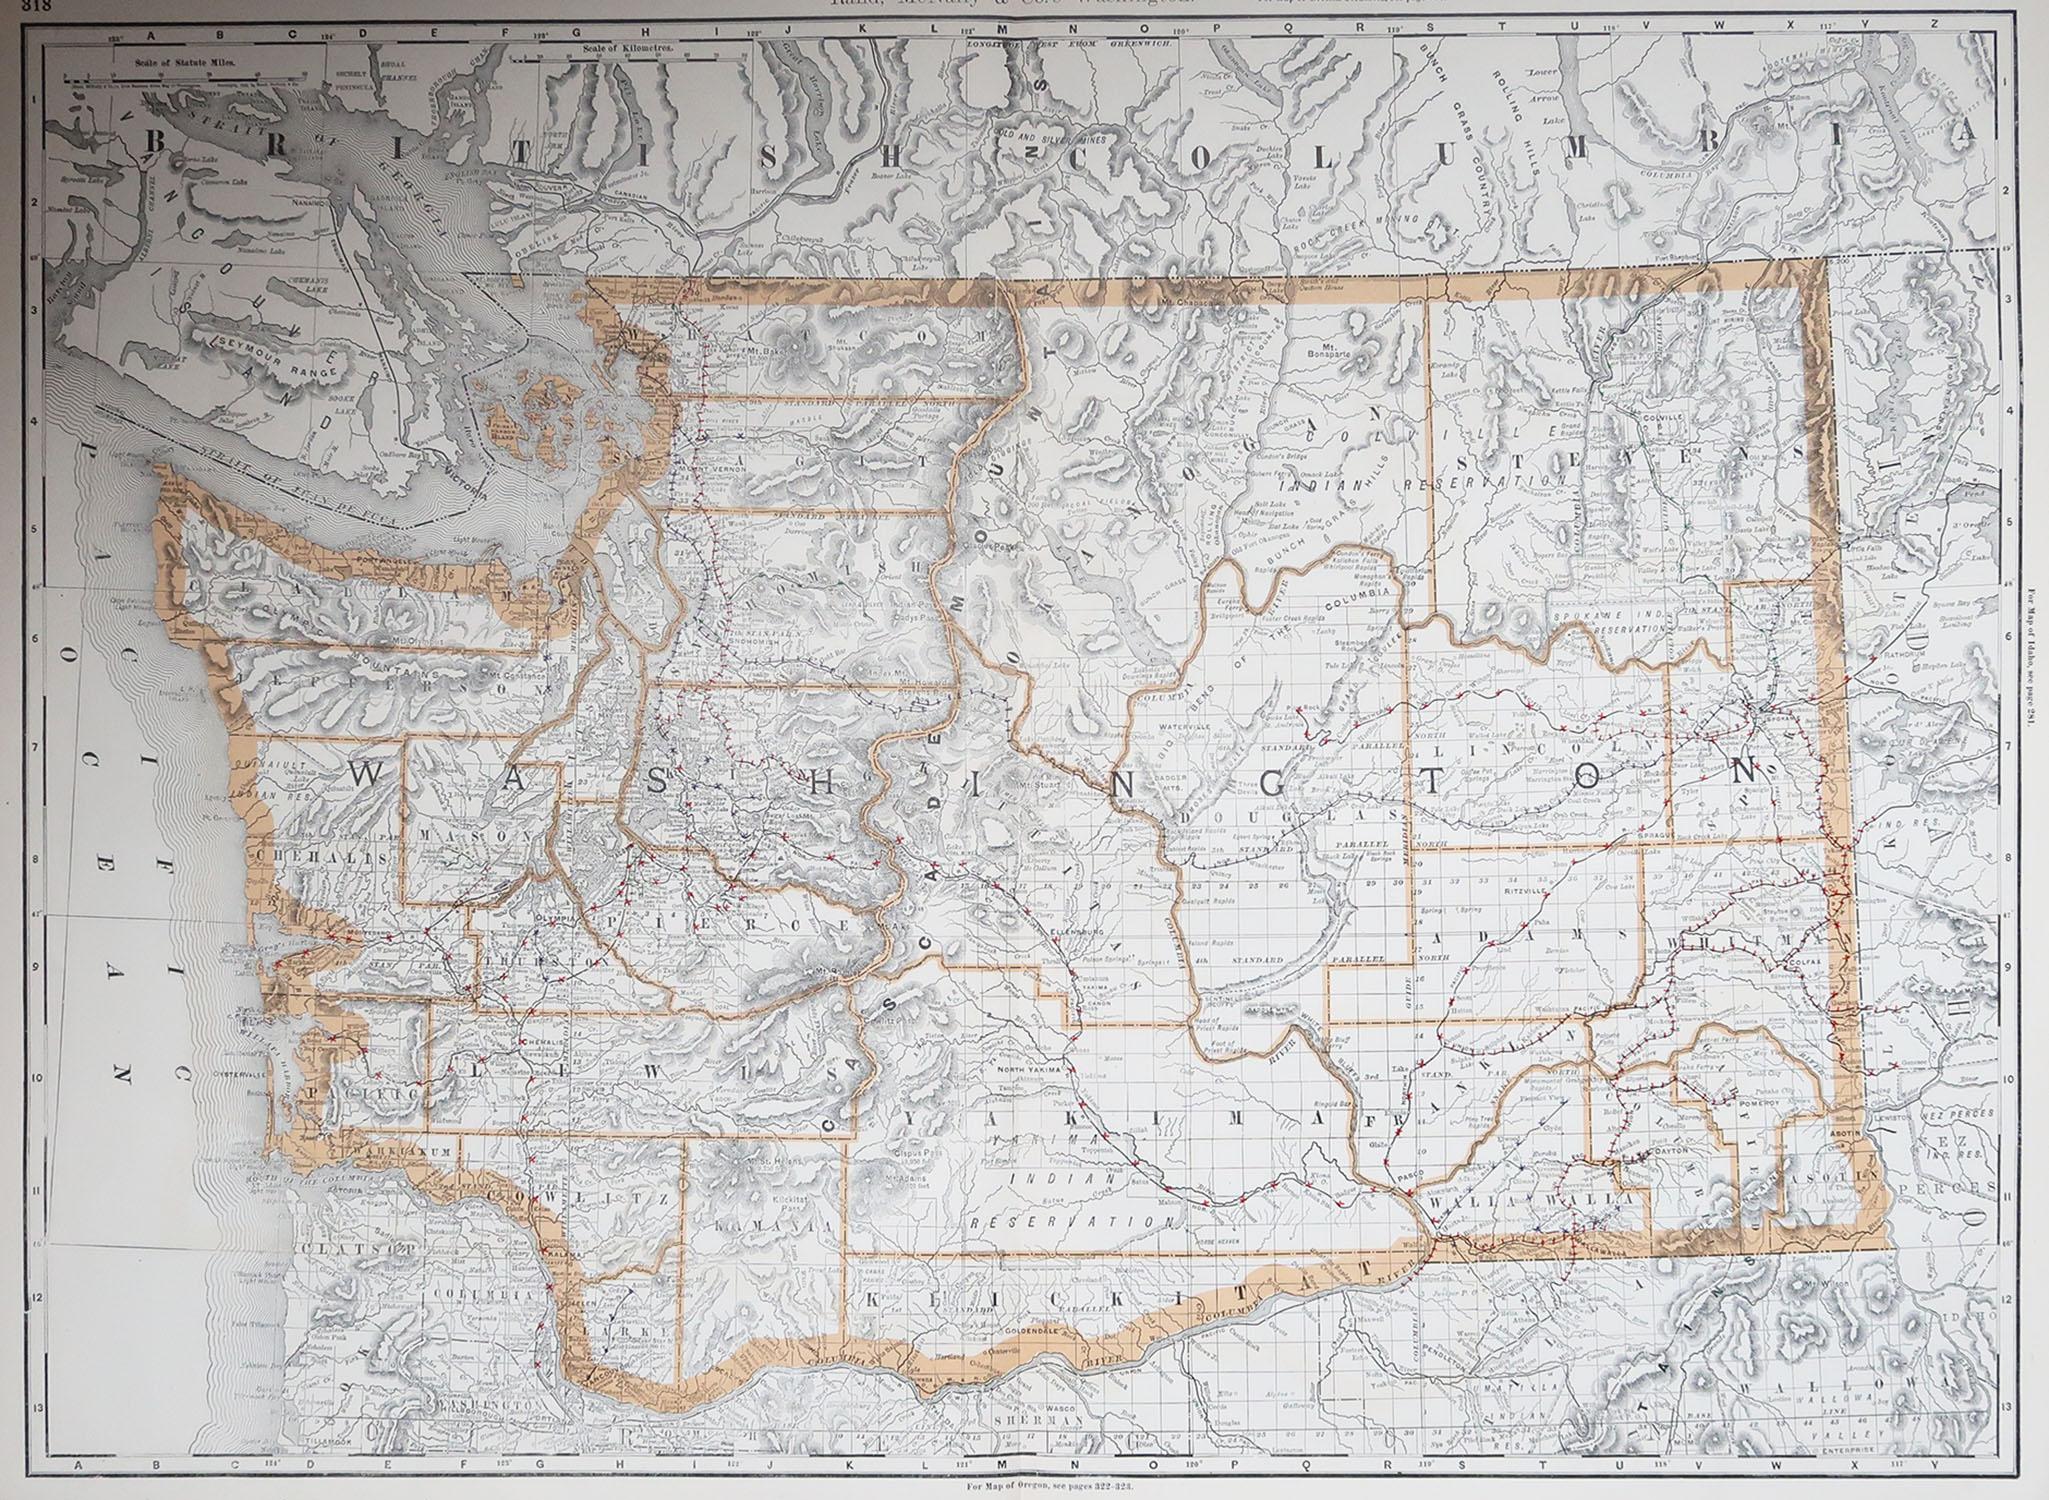 Wunderschöne Karte von Washington.

Originalfarbe.

Von Rand, McNally & Co.

Veröffentlicht, 1894.

Ungerahmt.

Kostenloser Versand.